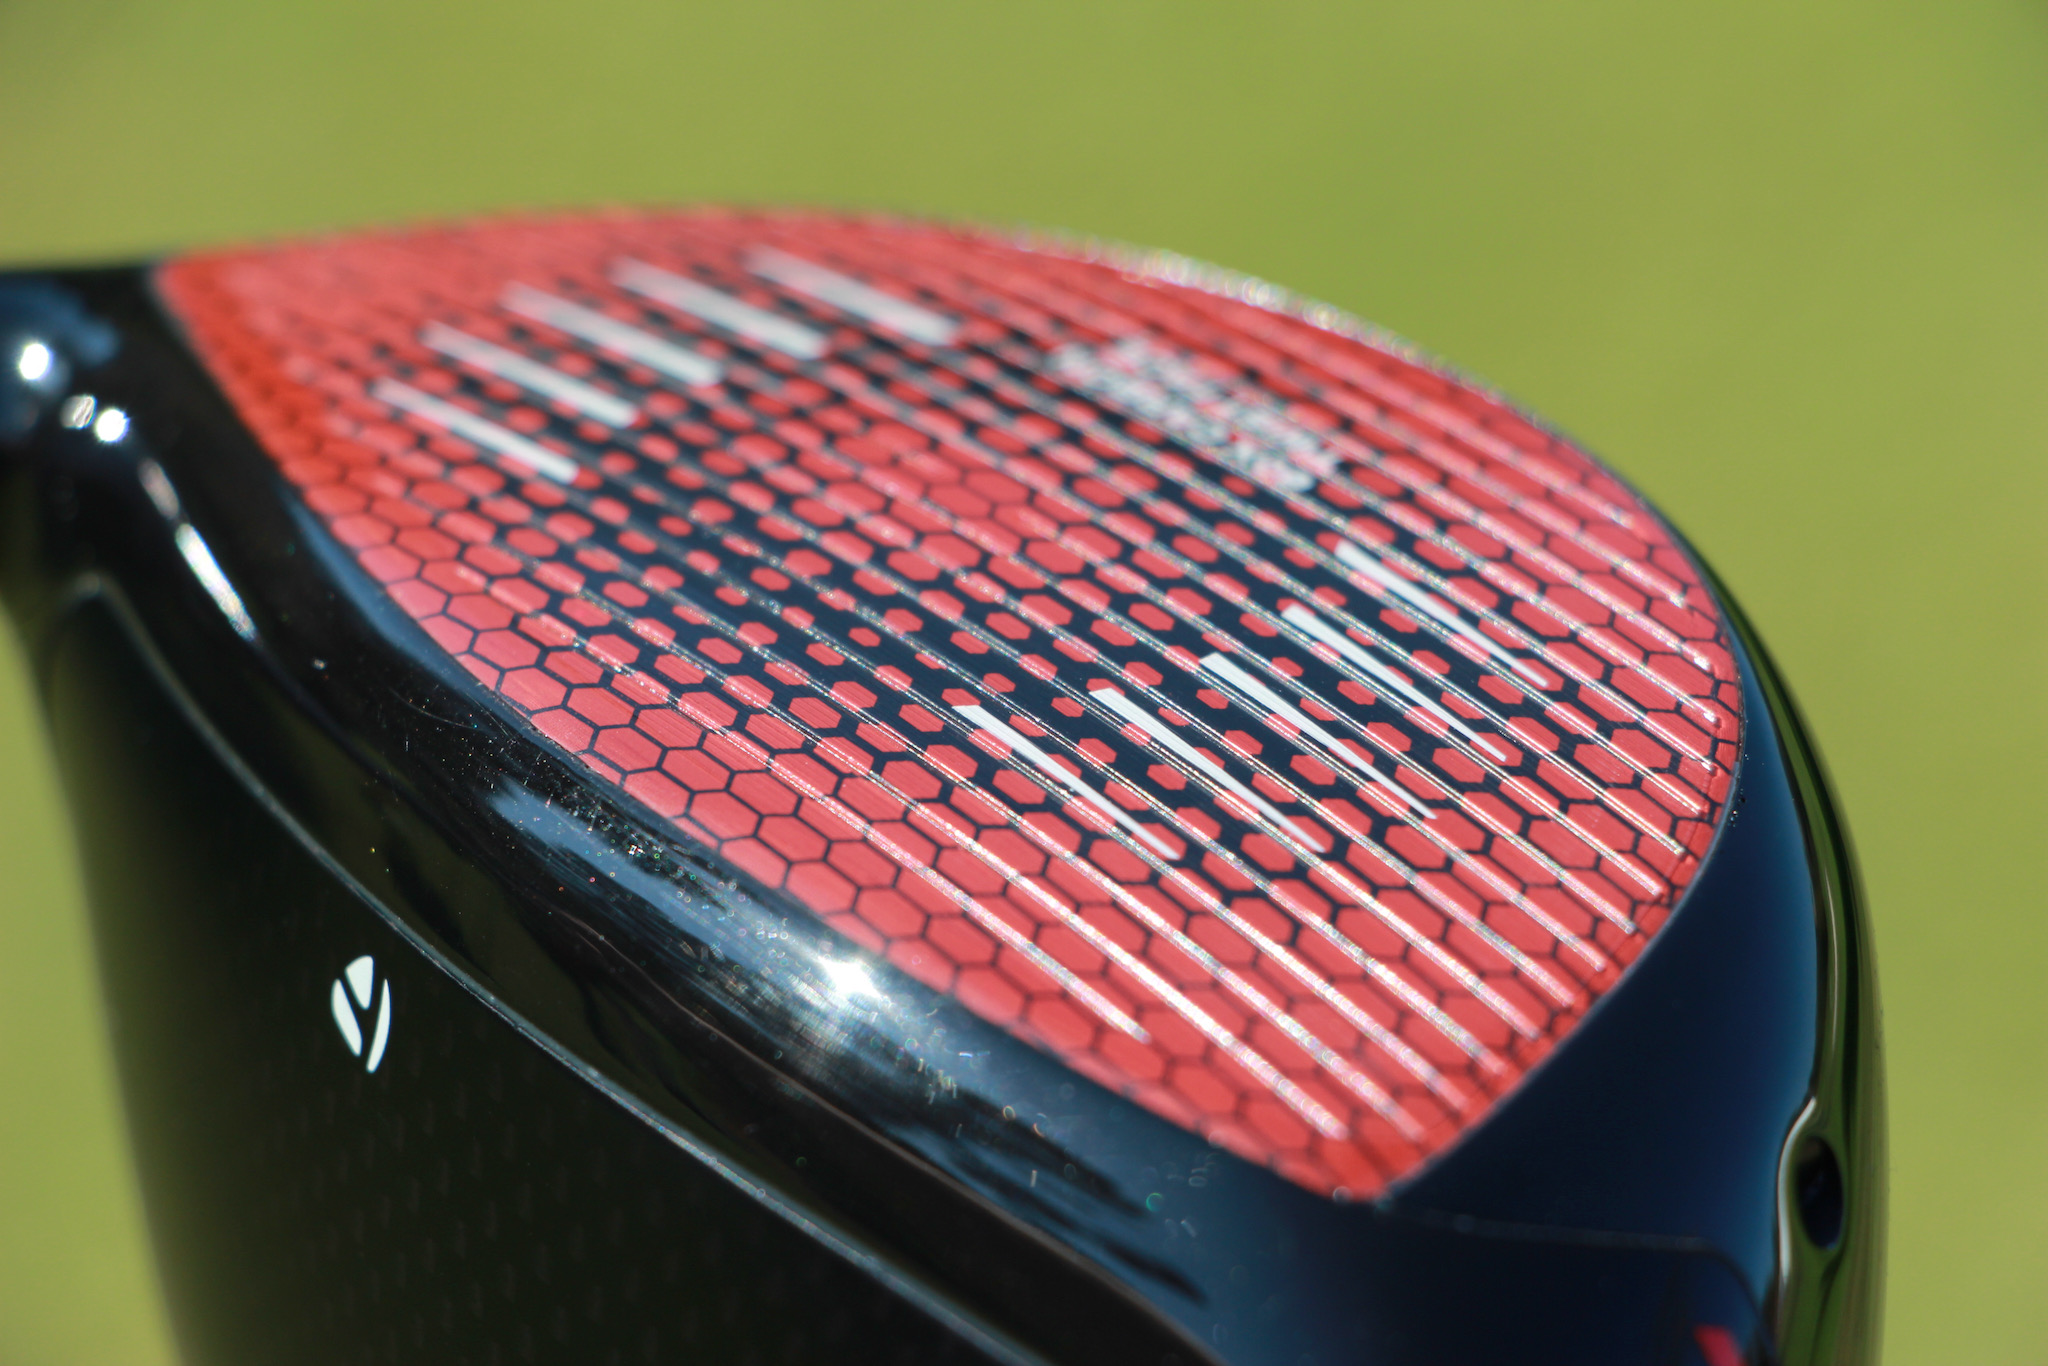 A close-up look at the new 60X Carbon Fiber Twist Face